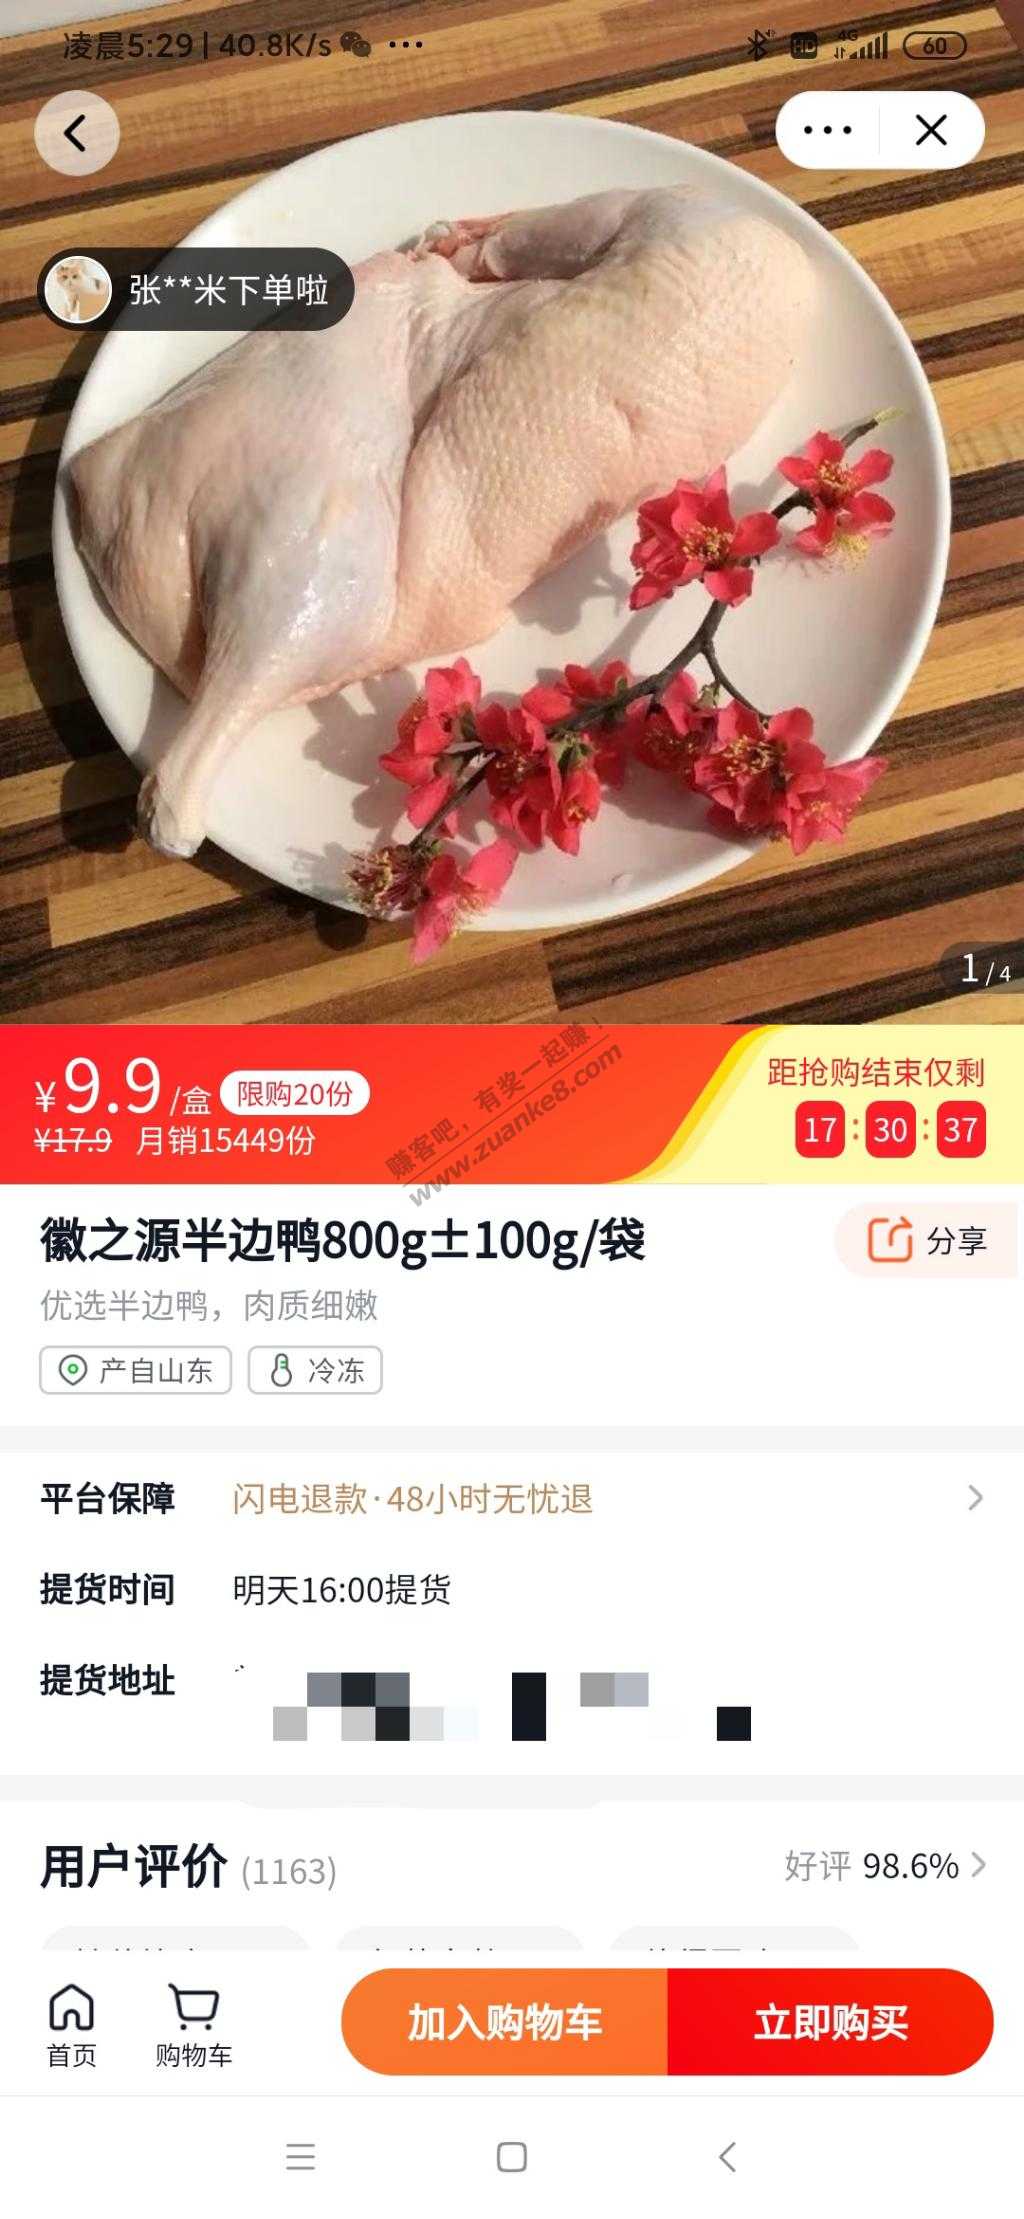 美团优选鸭肉好价-10块钱买-900克-惠小助(52huixz.com)